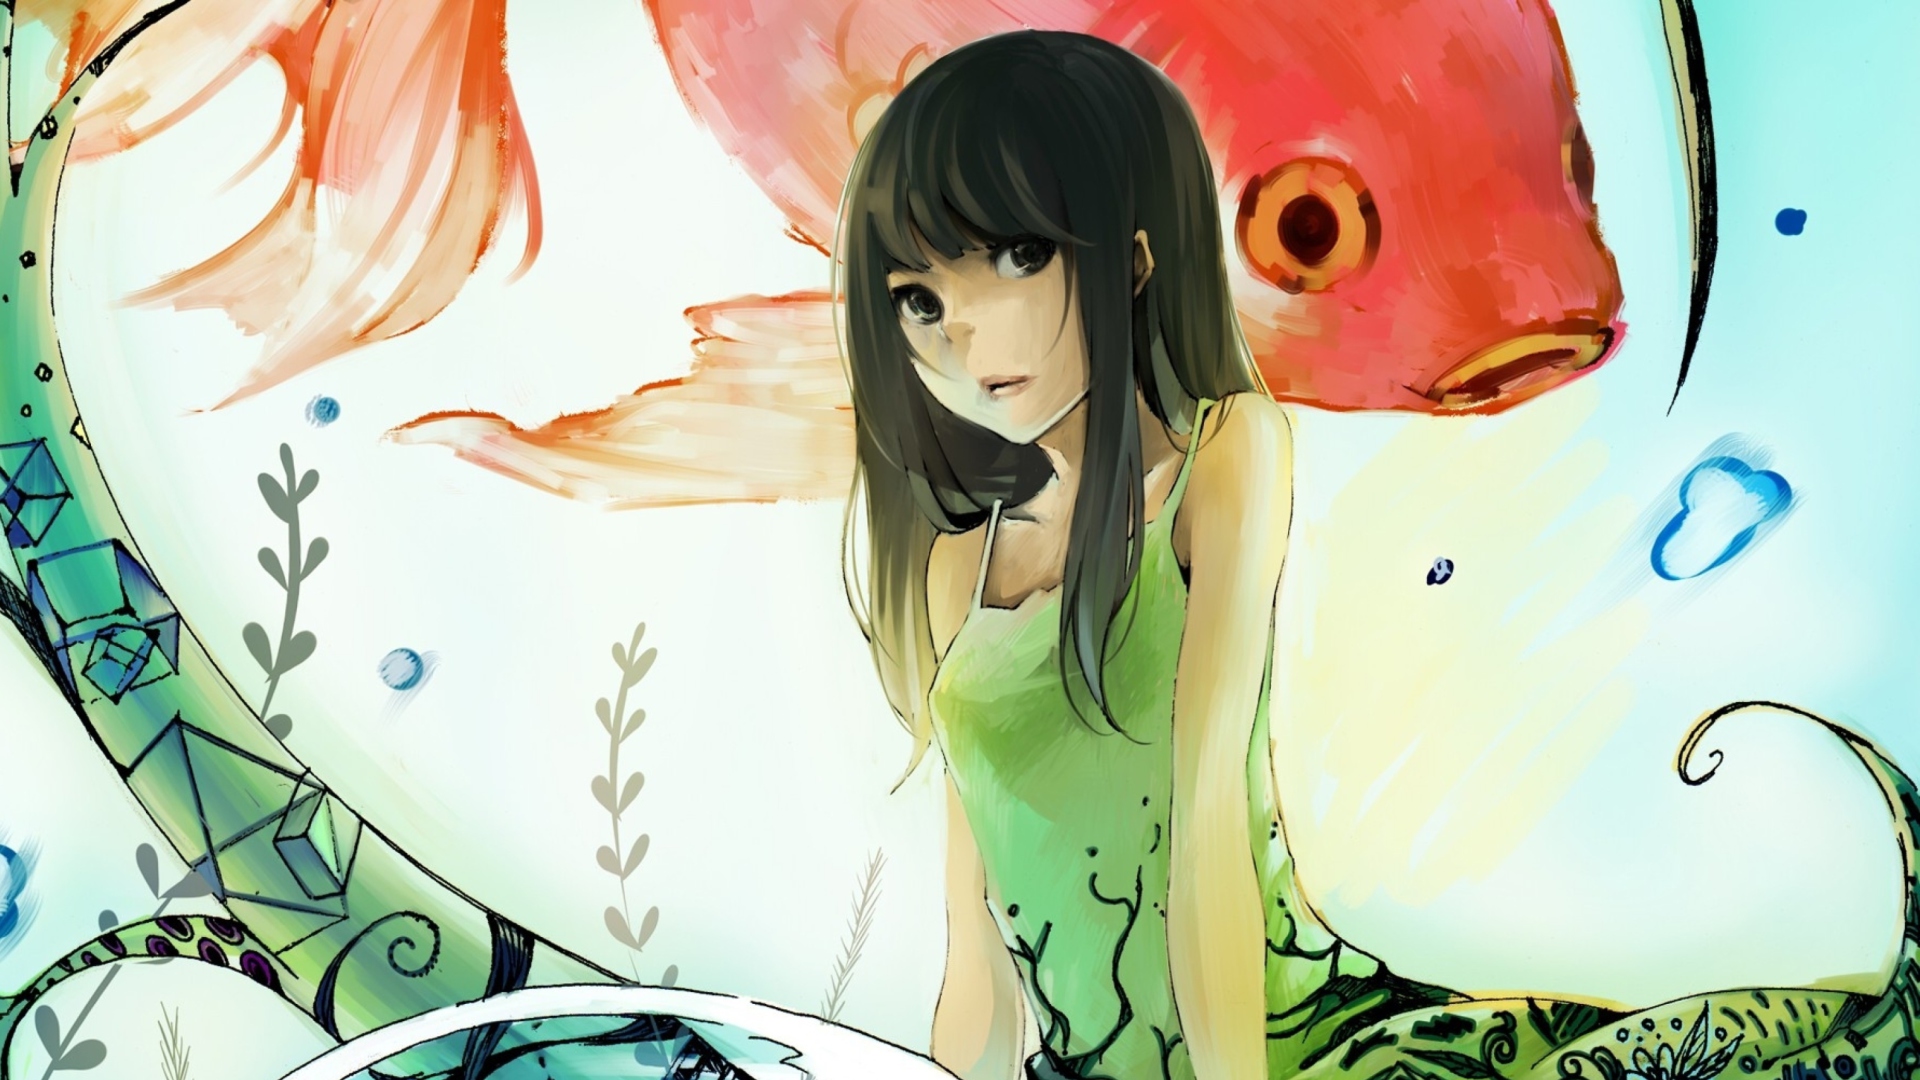 Das Cute Anime Girl Painting Wallpaper 1920x1080